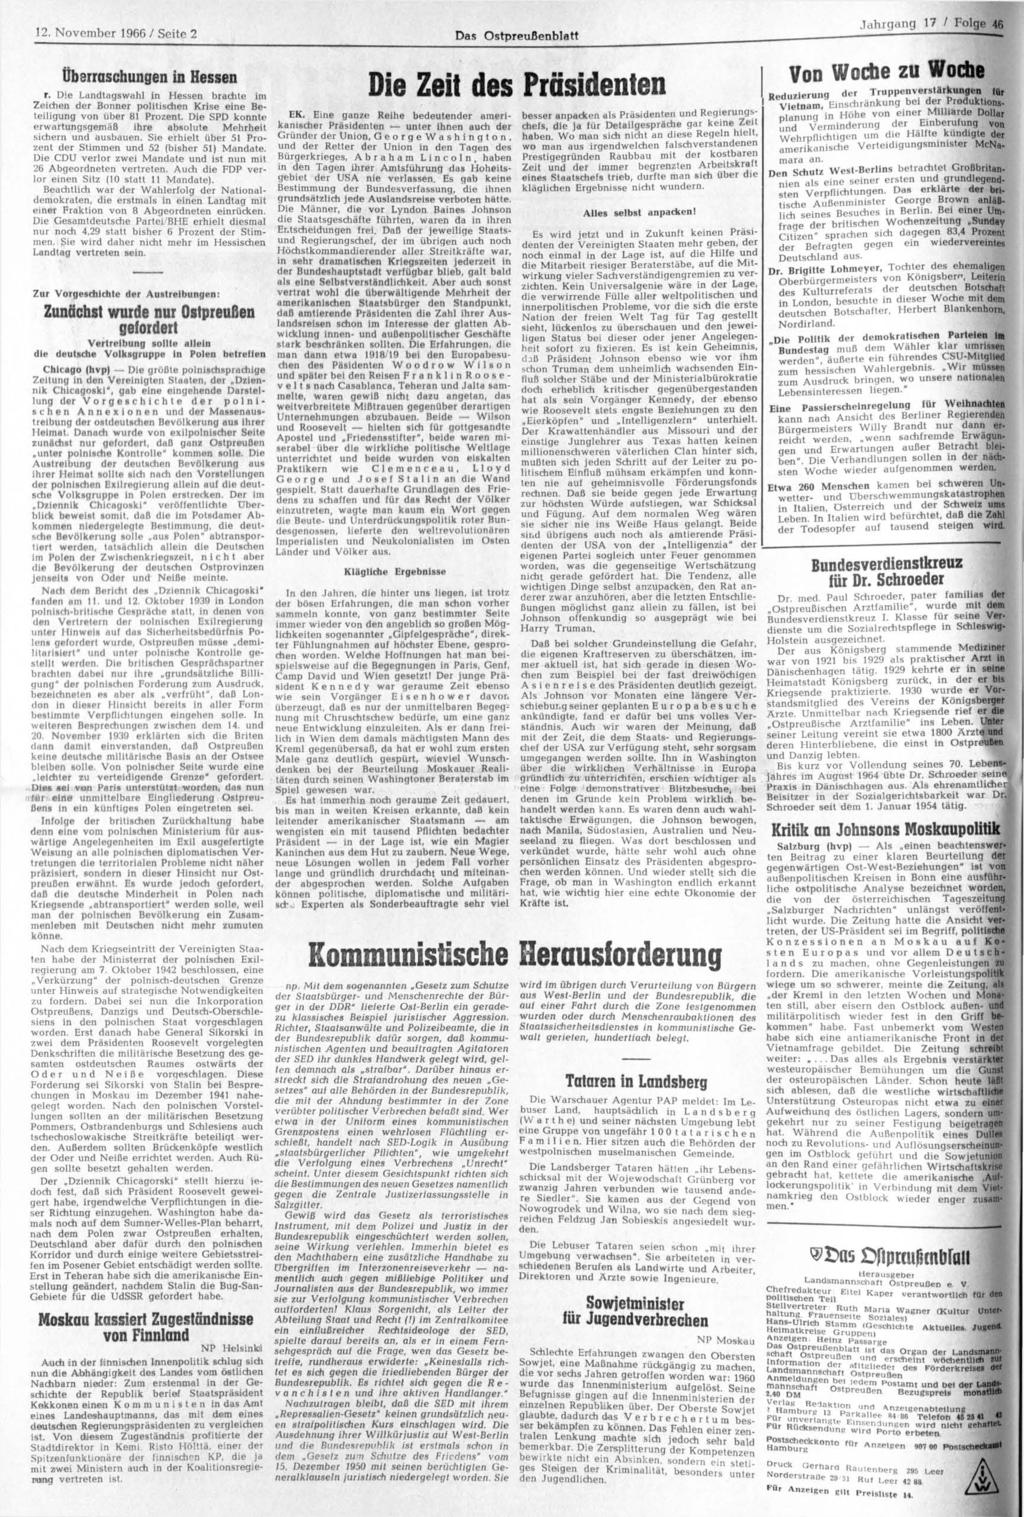 12. November 1966 / Seite 2 Das Ostpreußenblatt Jahrgang 17 / Folc. Überraschungen in Hessen r.